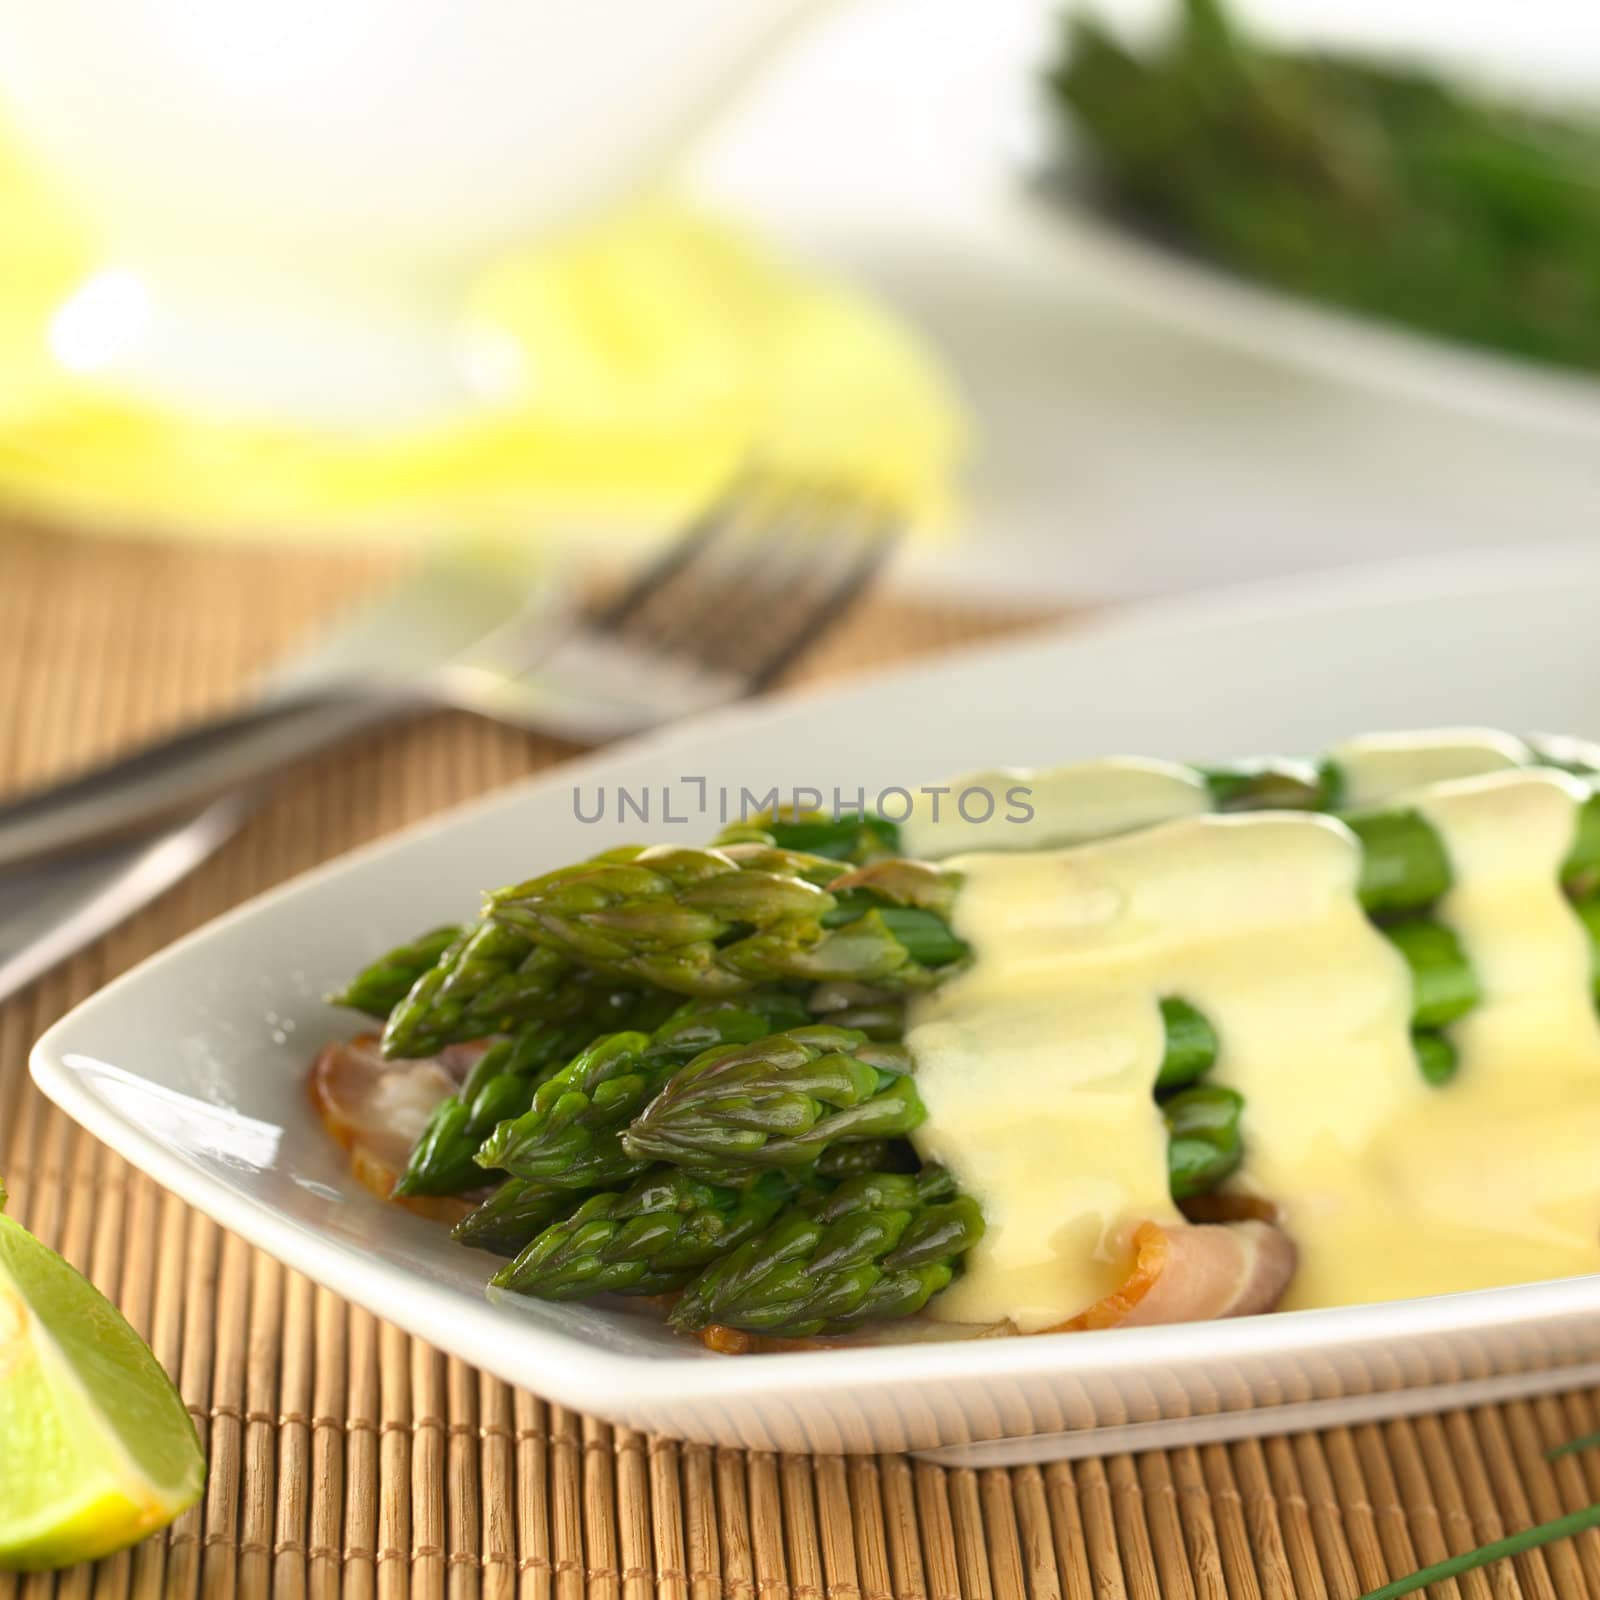 Green Asparagus with Hollandaise Sauce by ildi